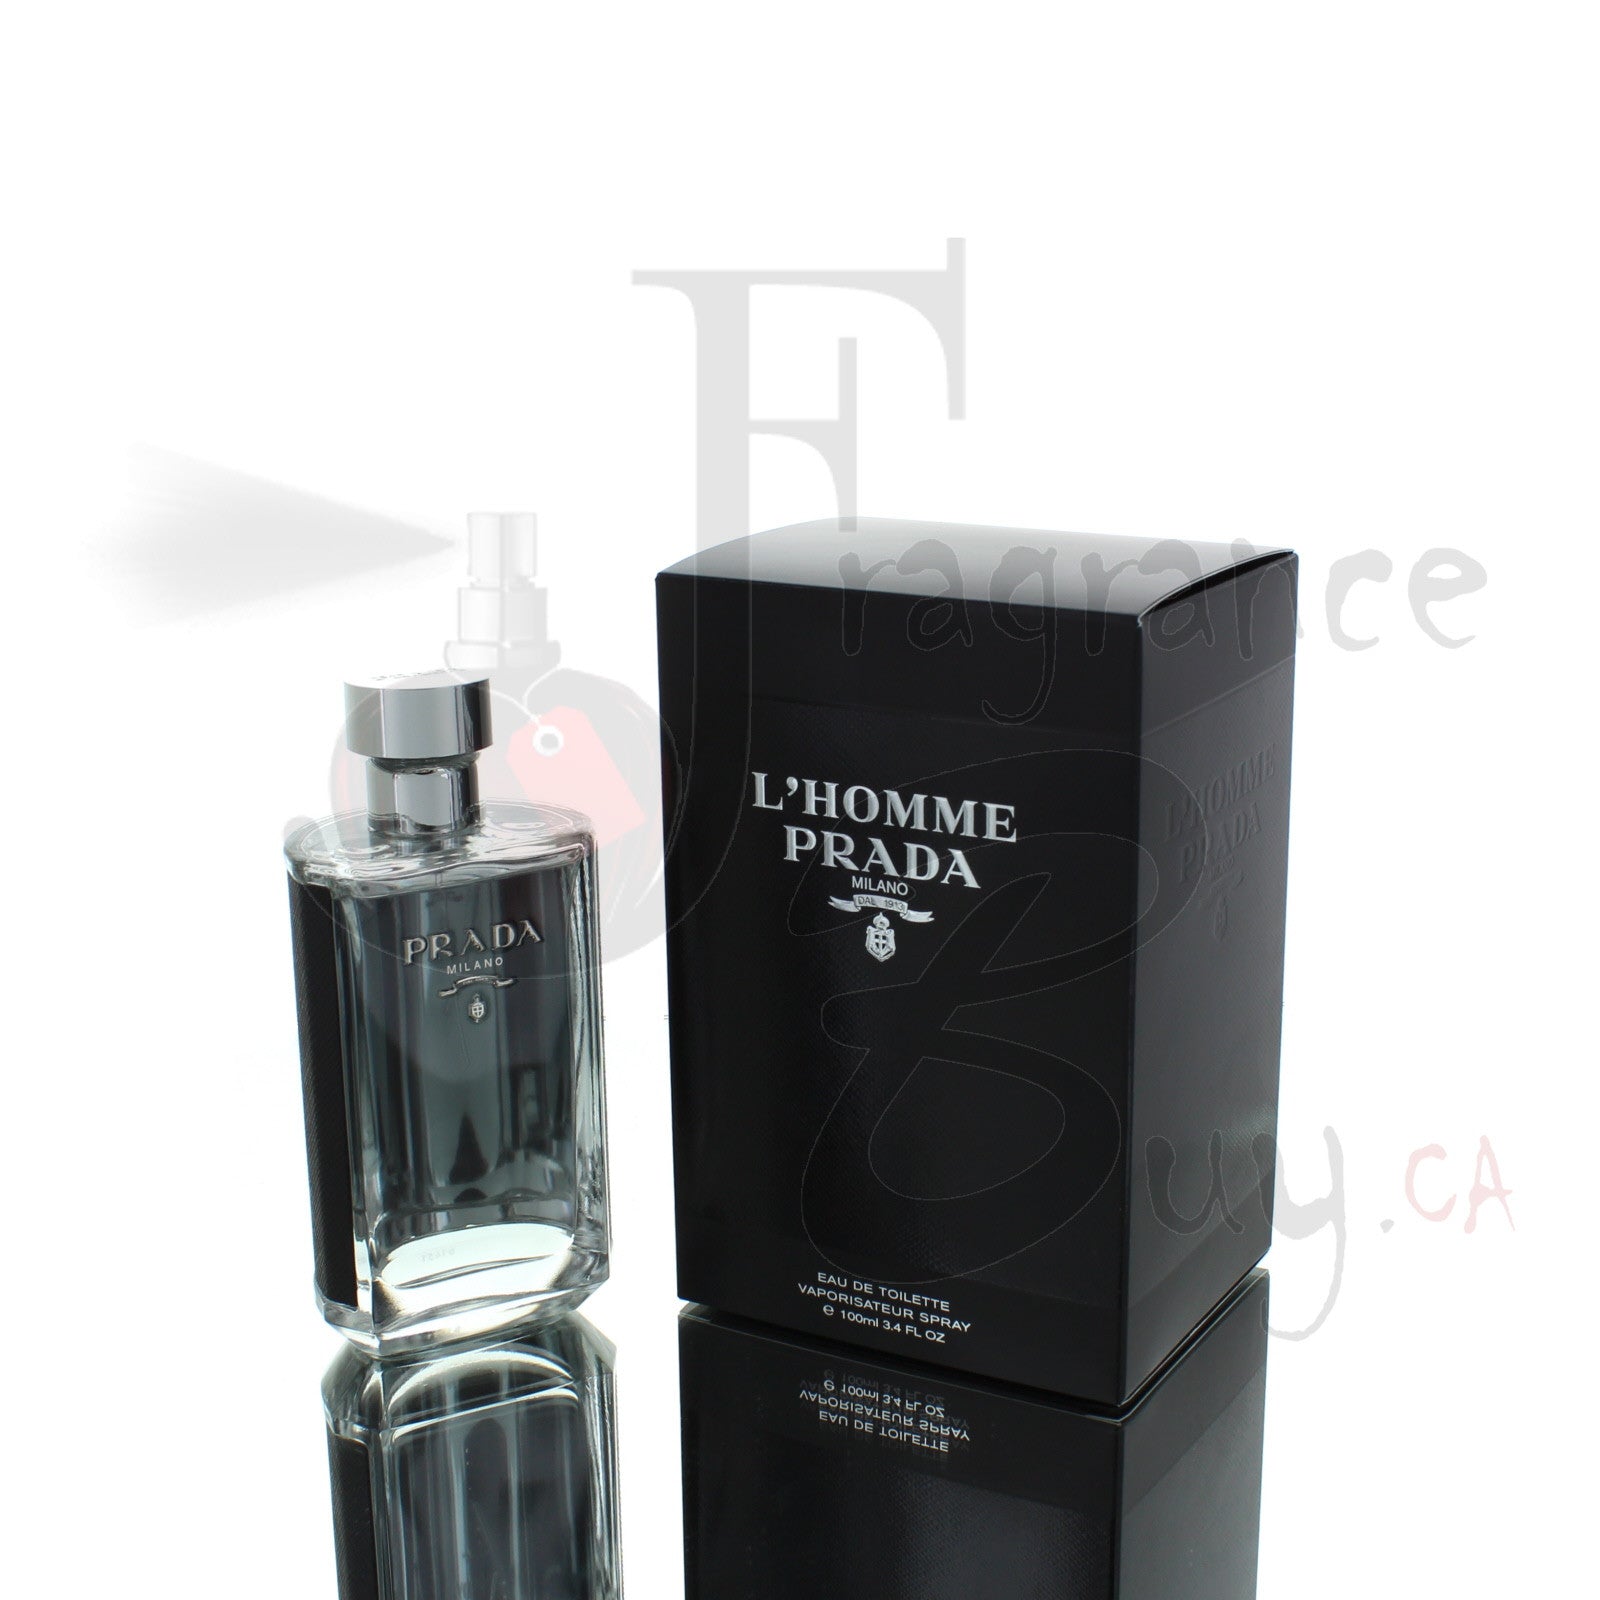  — Prada L'homme Milano Man Cologne | Best Price,  FragranceBuy Canada